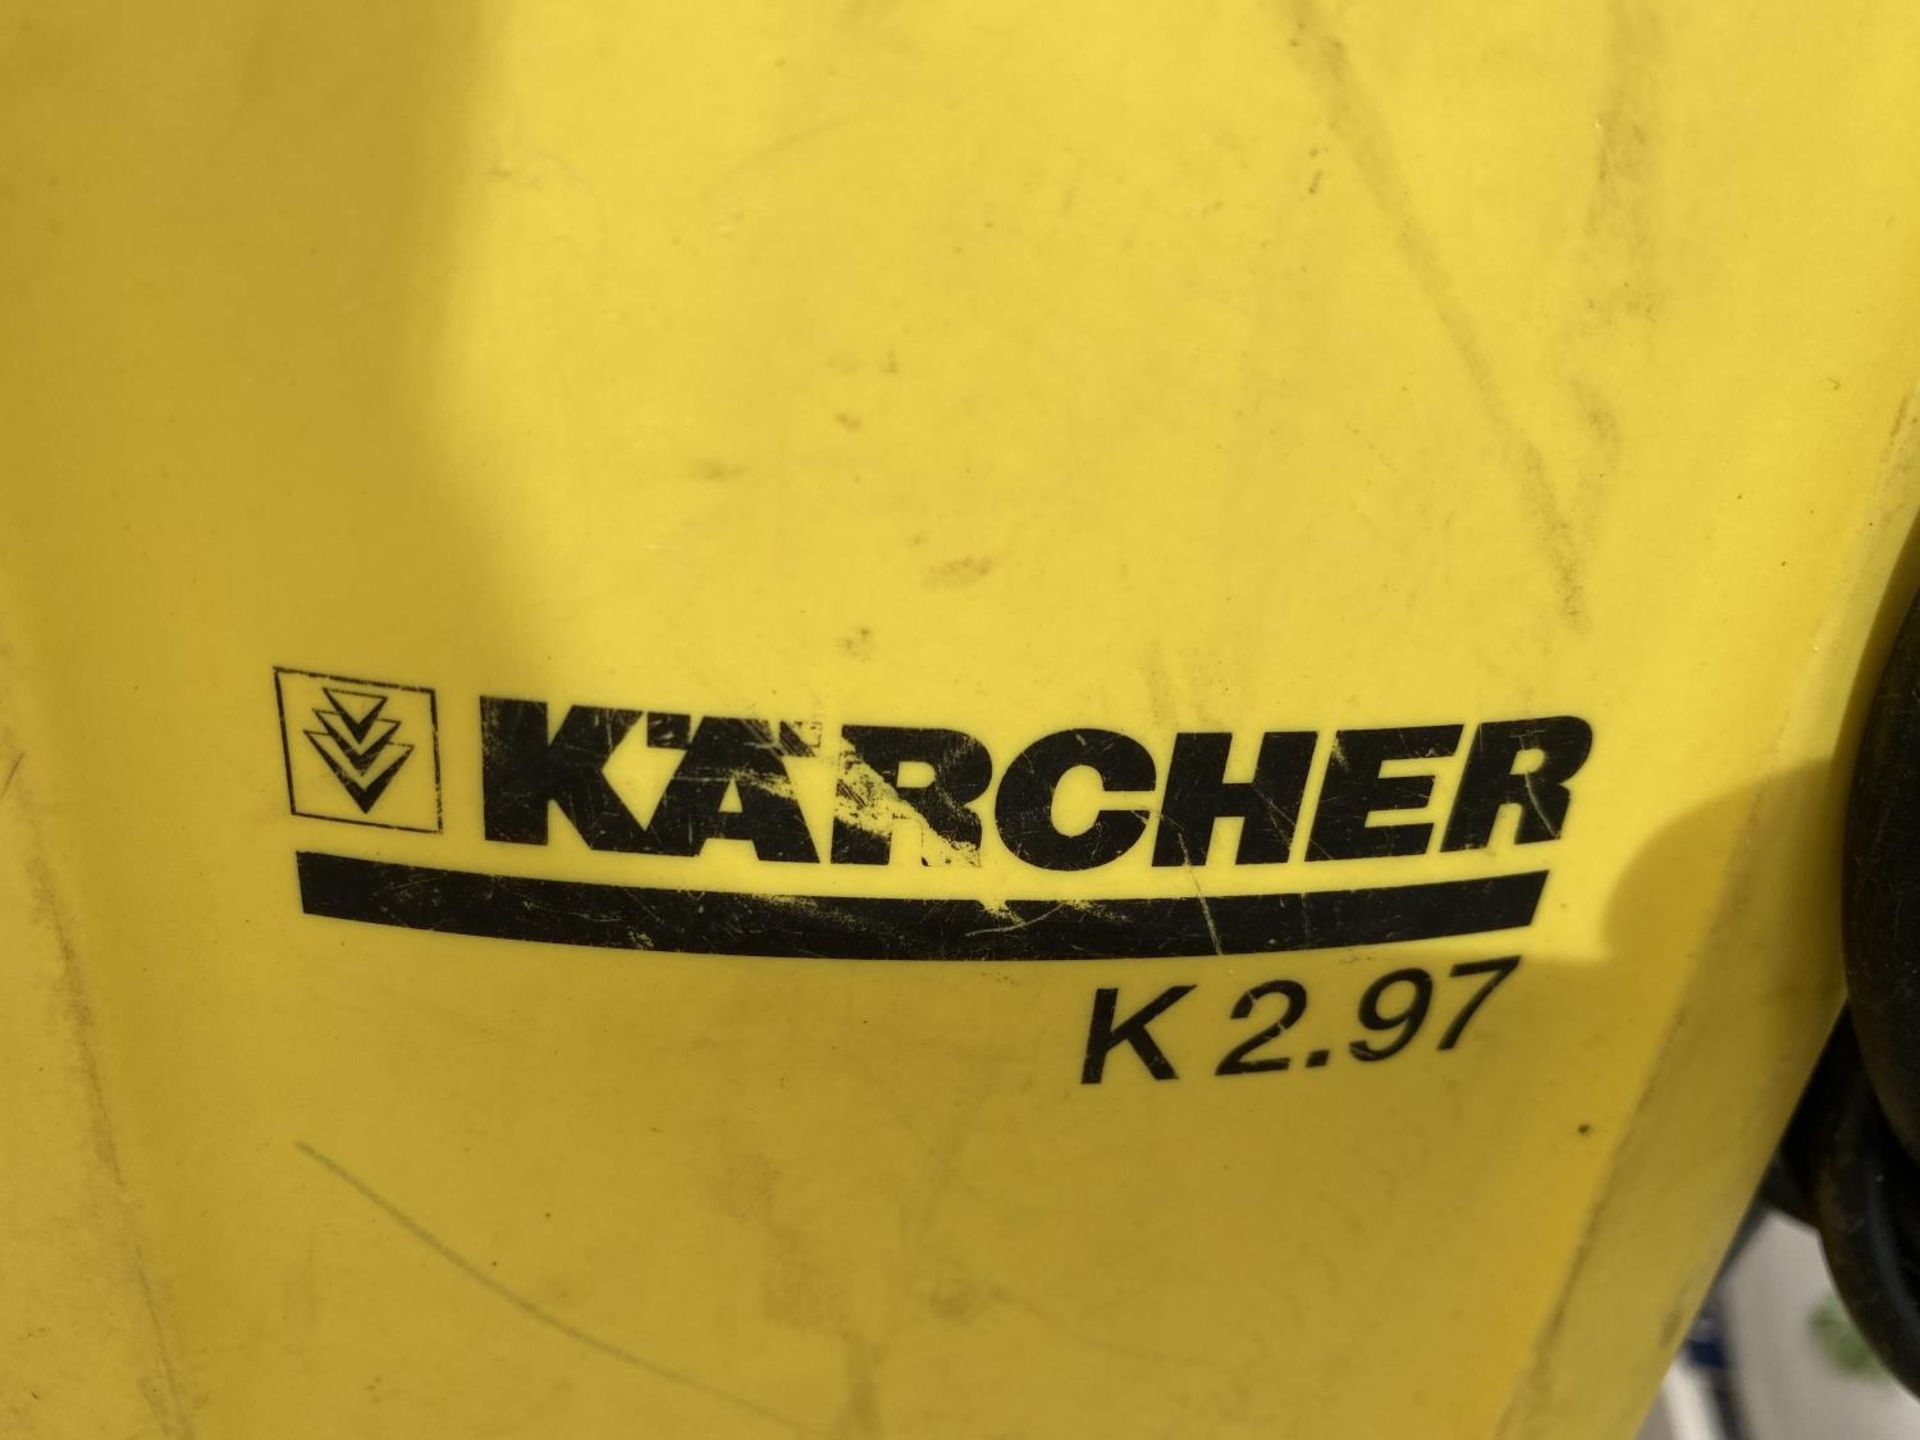 A KARCHER K2.97 PRESSURE WASHER - Image 2 of 3